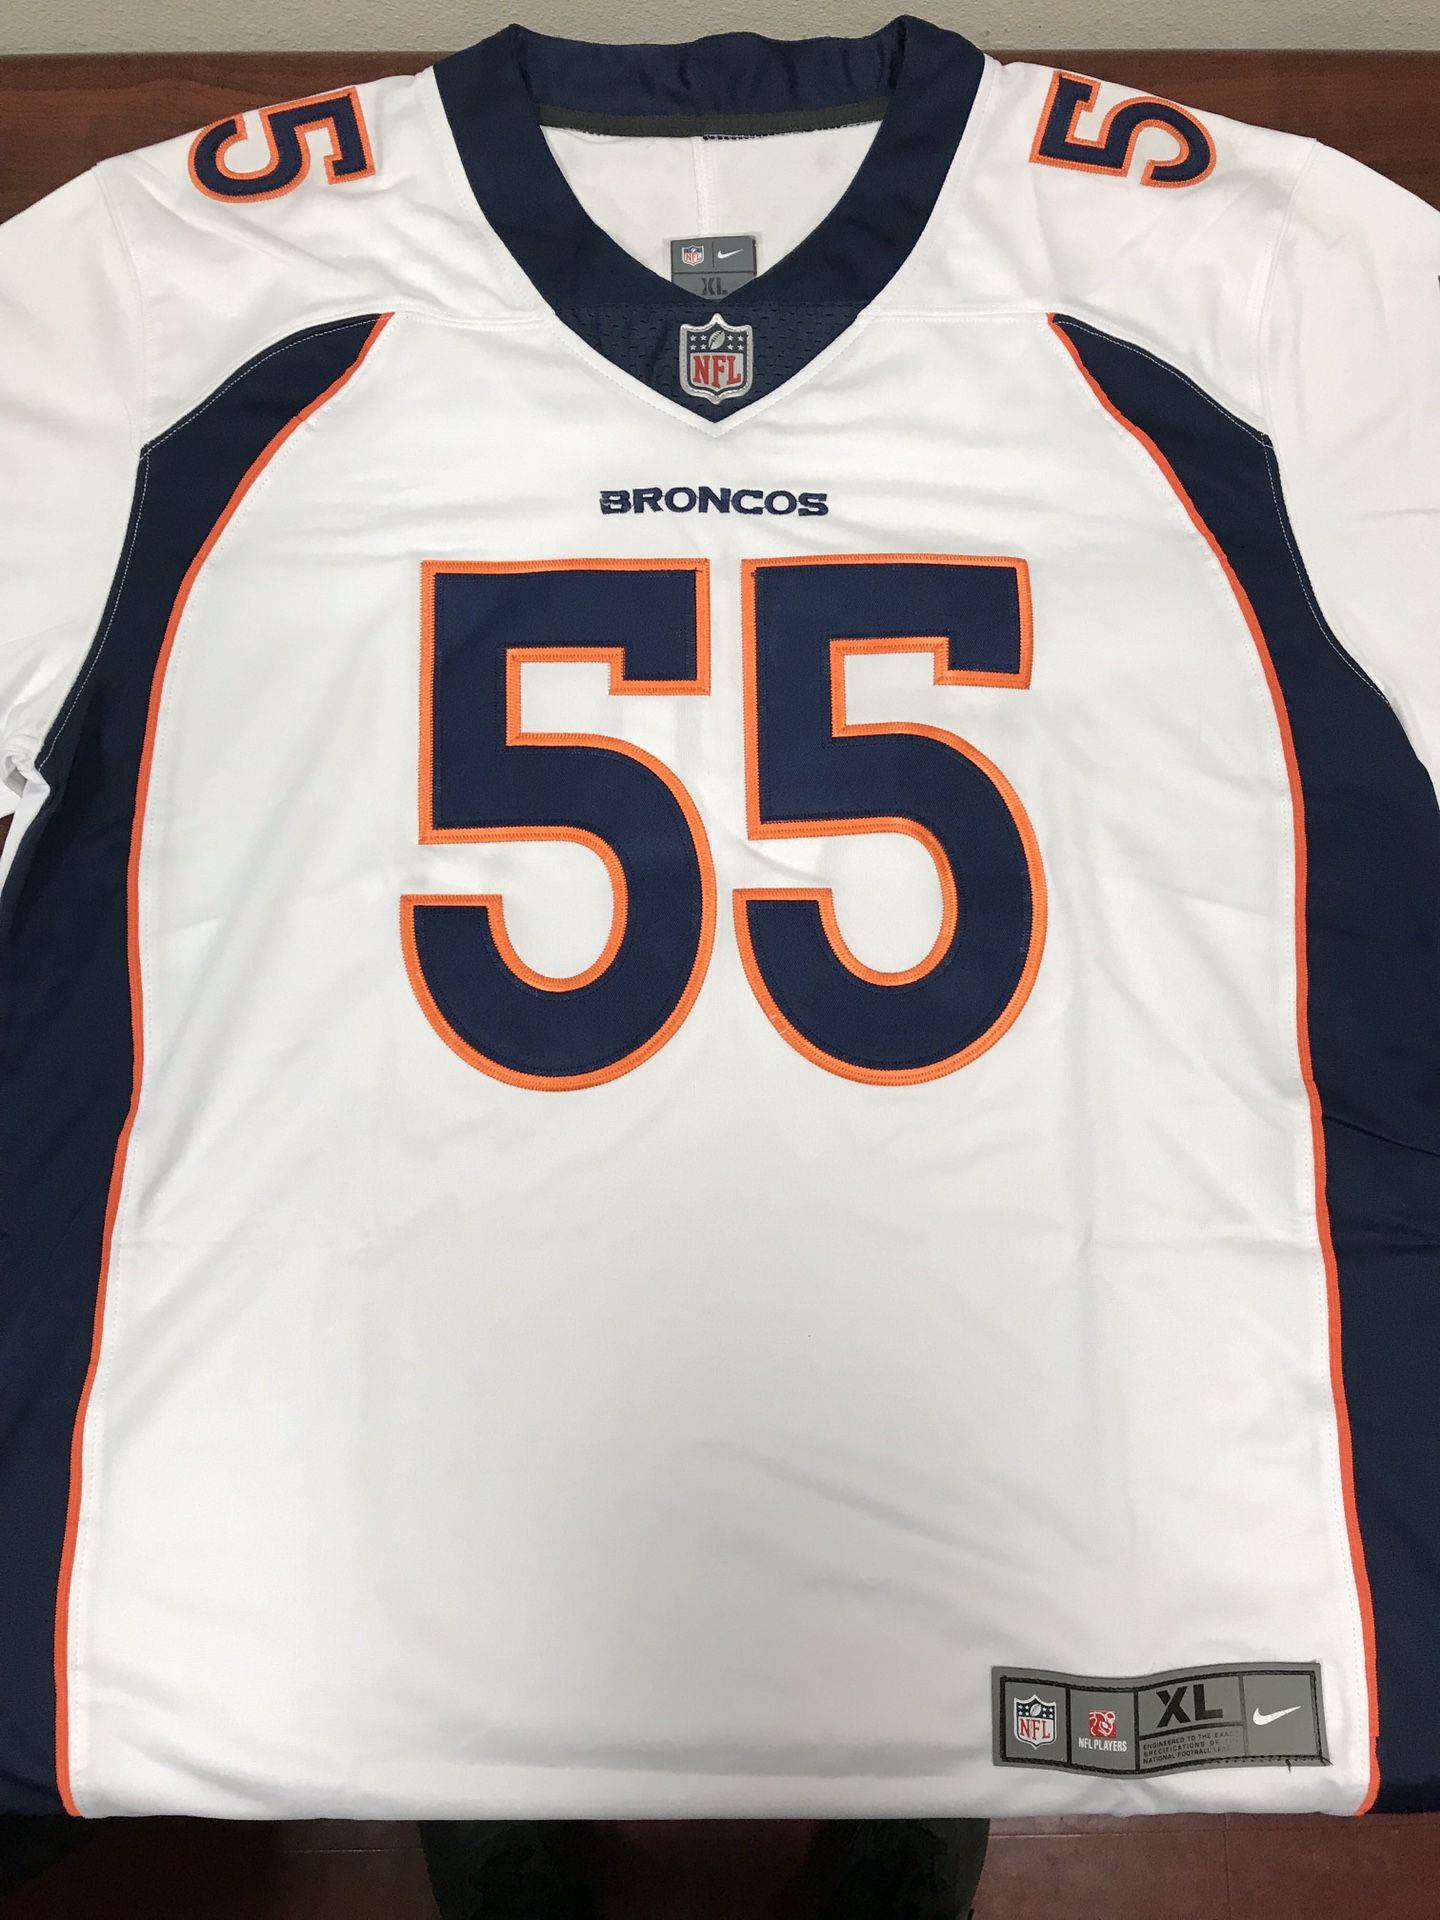 Denver Broncos “Chubb “ Jersey $40 size XL